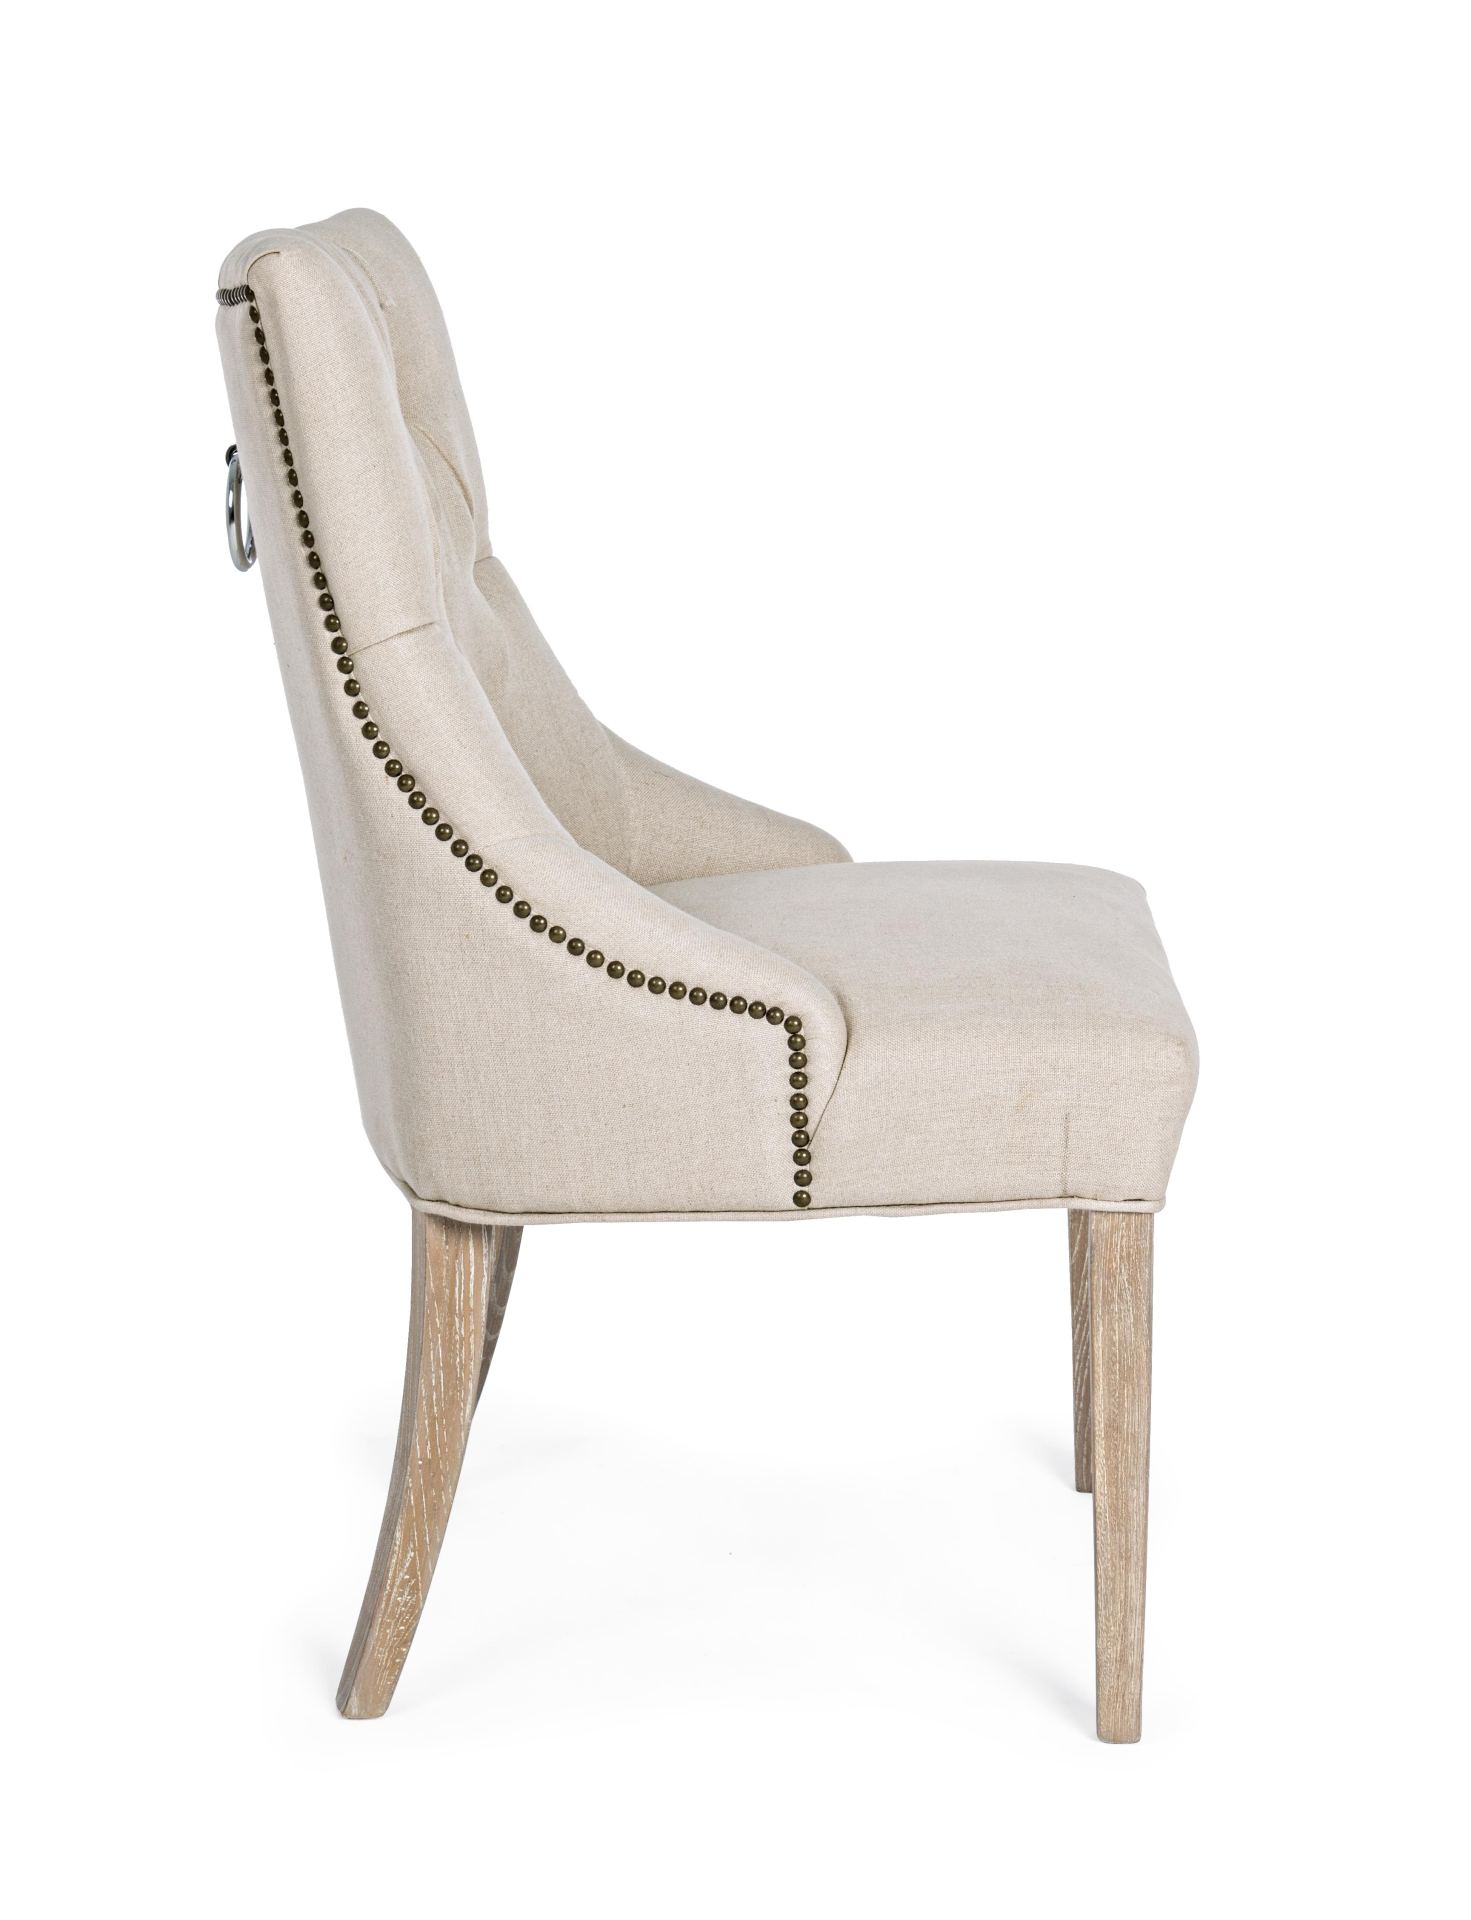 Der Esszimmerstuhl Cally überzeugt mit seinem klassischen Design. Gefertigt wurde der Stuhl aus einem Leinen-Bezug, welcher einen Beige Farbton besitzt. Das Gestell ist aus Eichenholz, welches natürlichen gehalten ist. Die Sitzhöhe beträgt 45 cm.